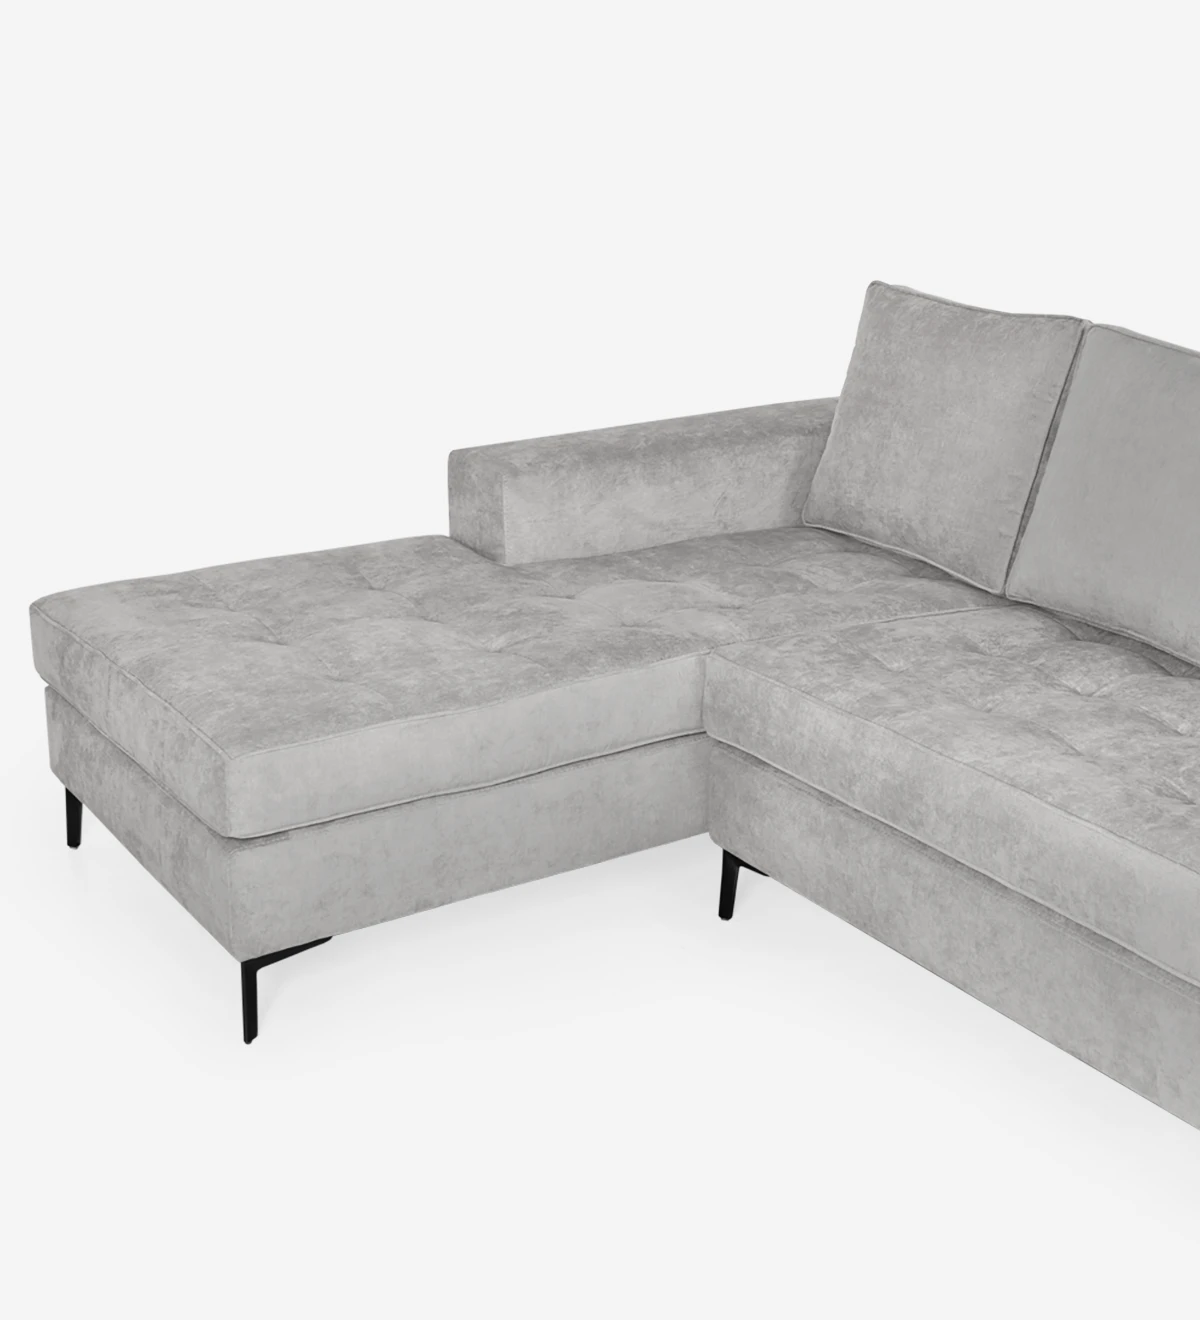 Sofá de 2 plazas con chaise longue. Tapizado en tejido, con pies de metal lacado en negro.